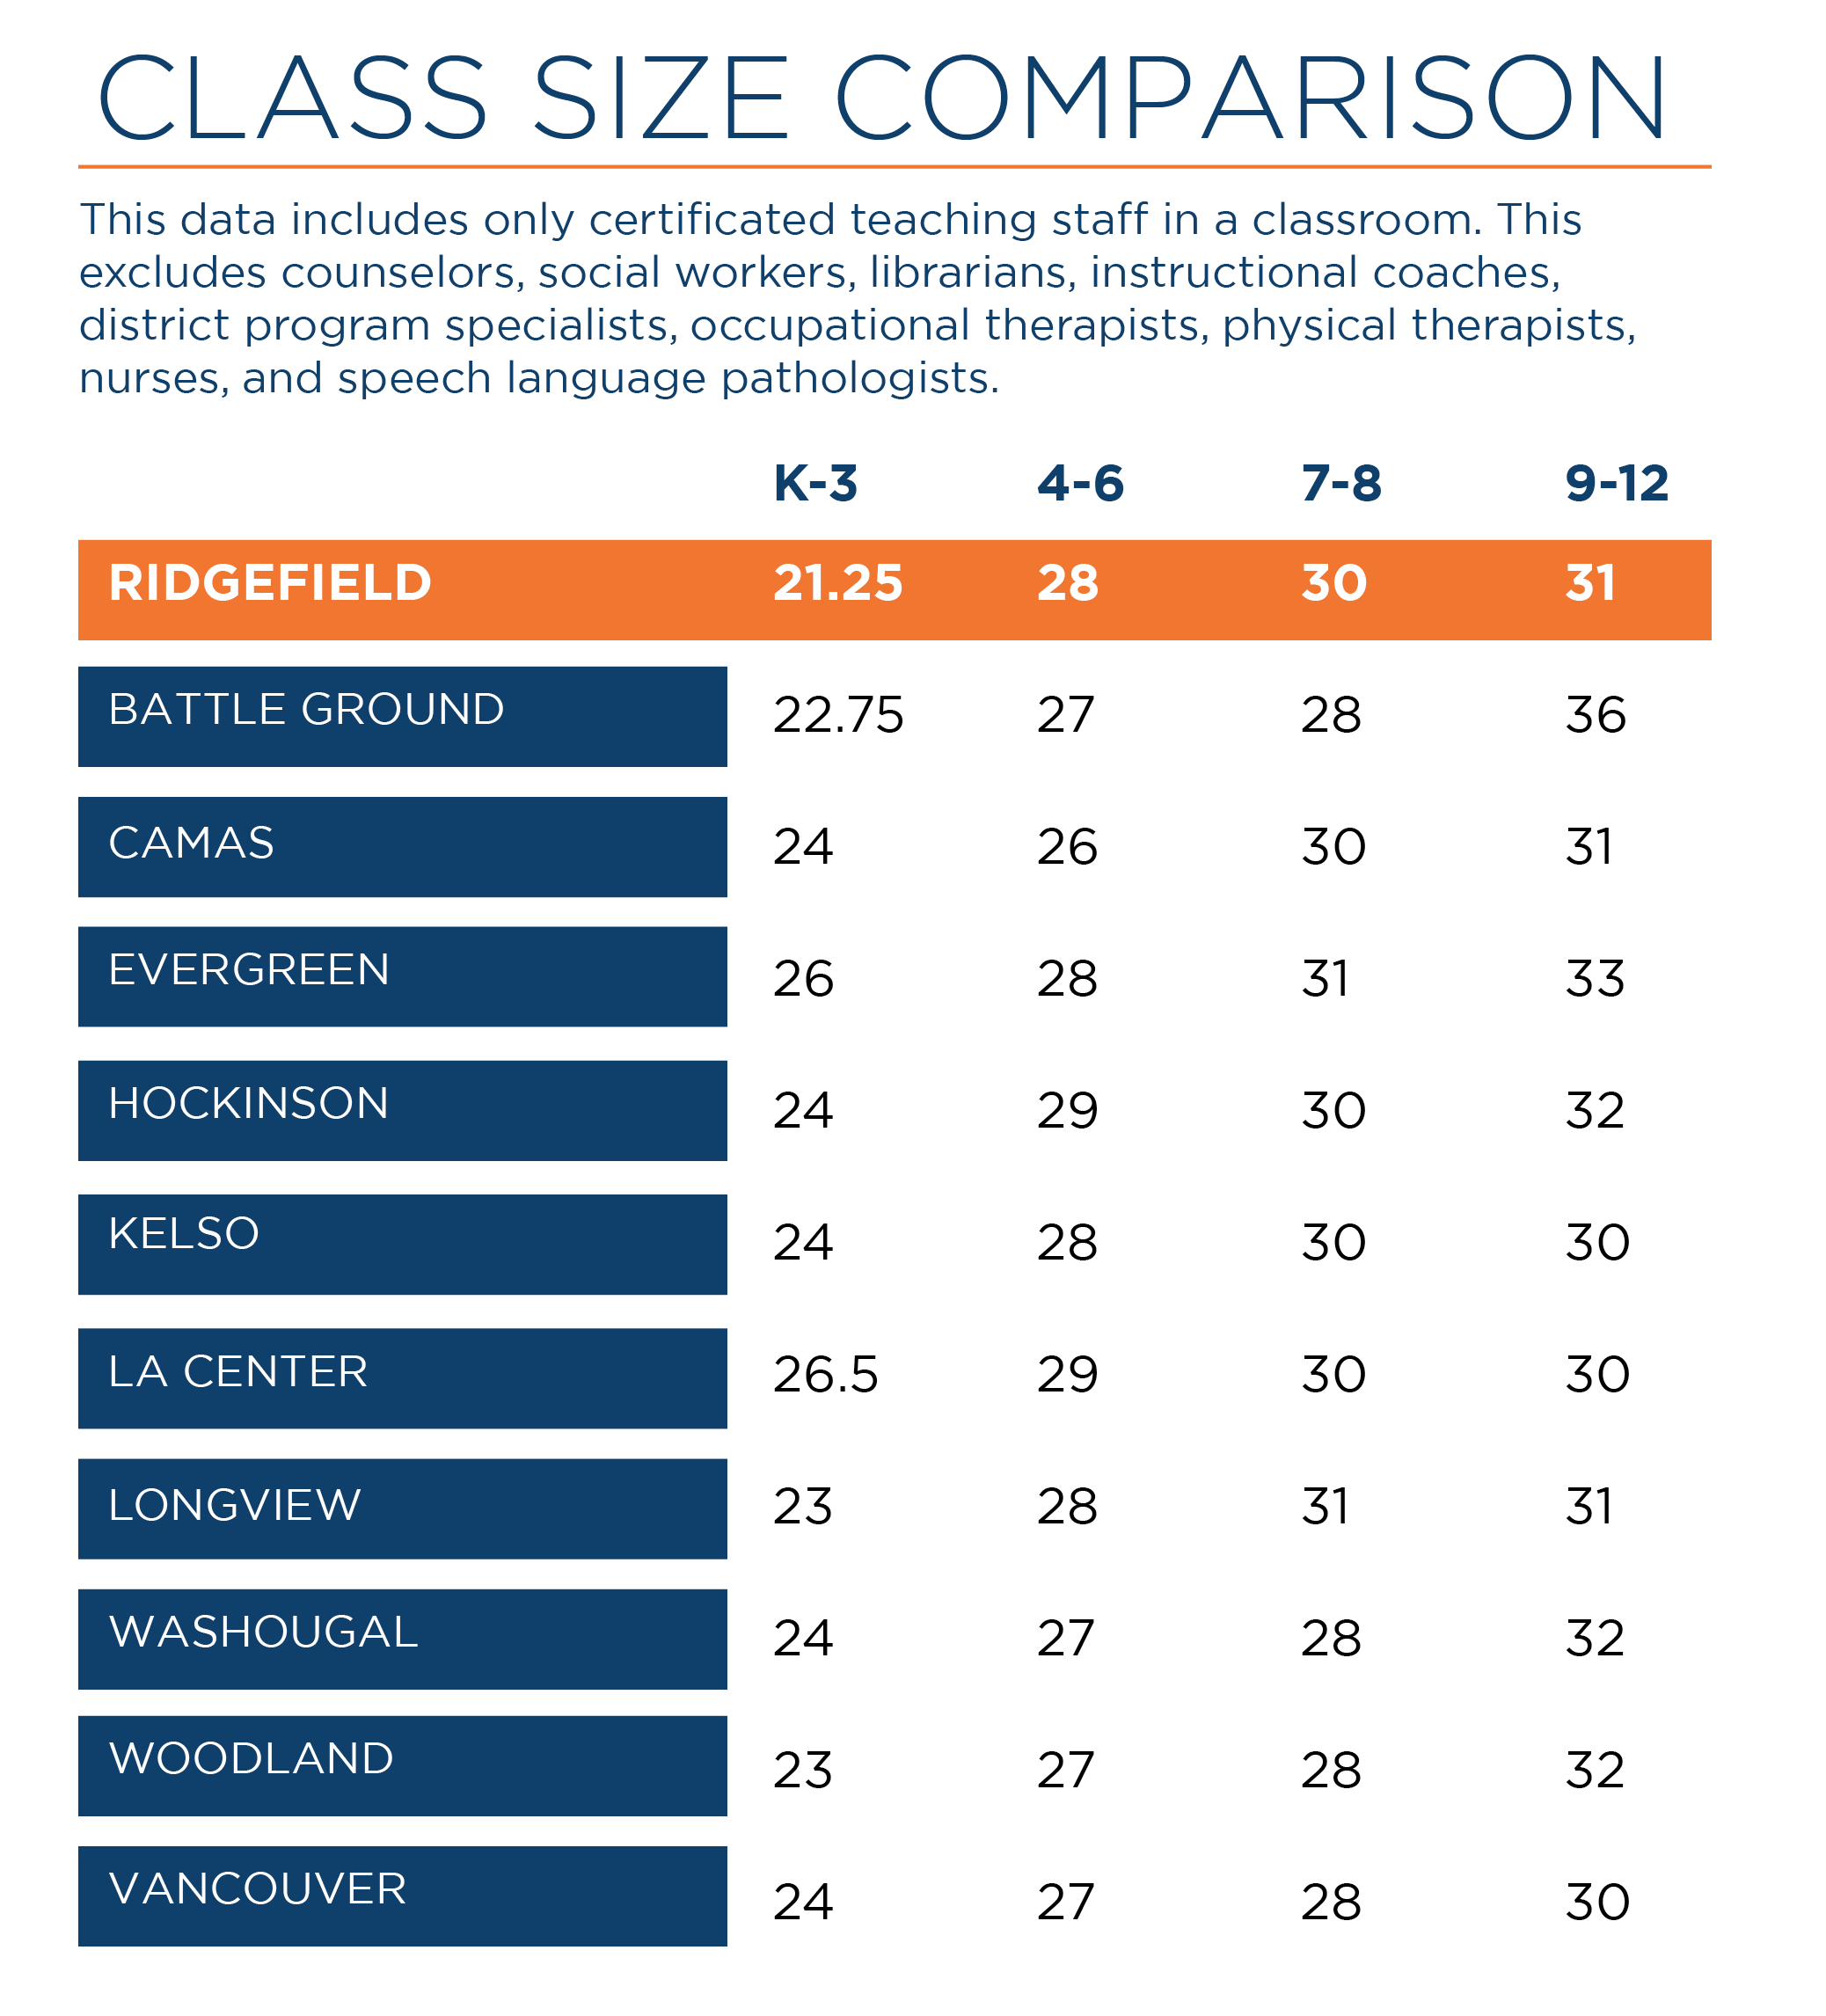 Class size comparison